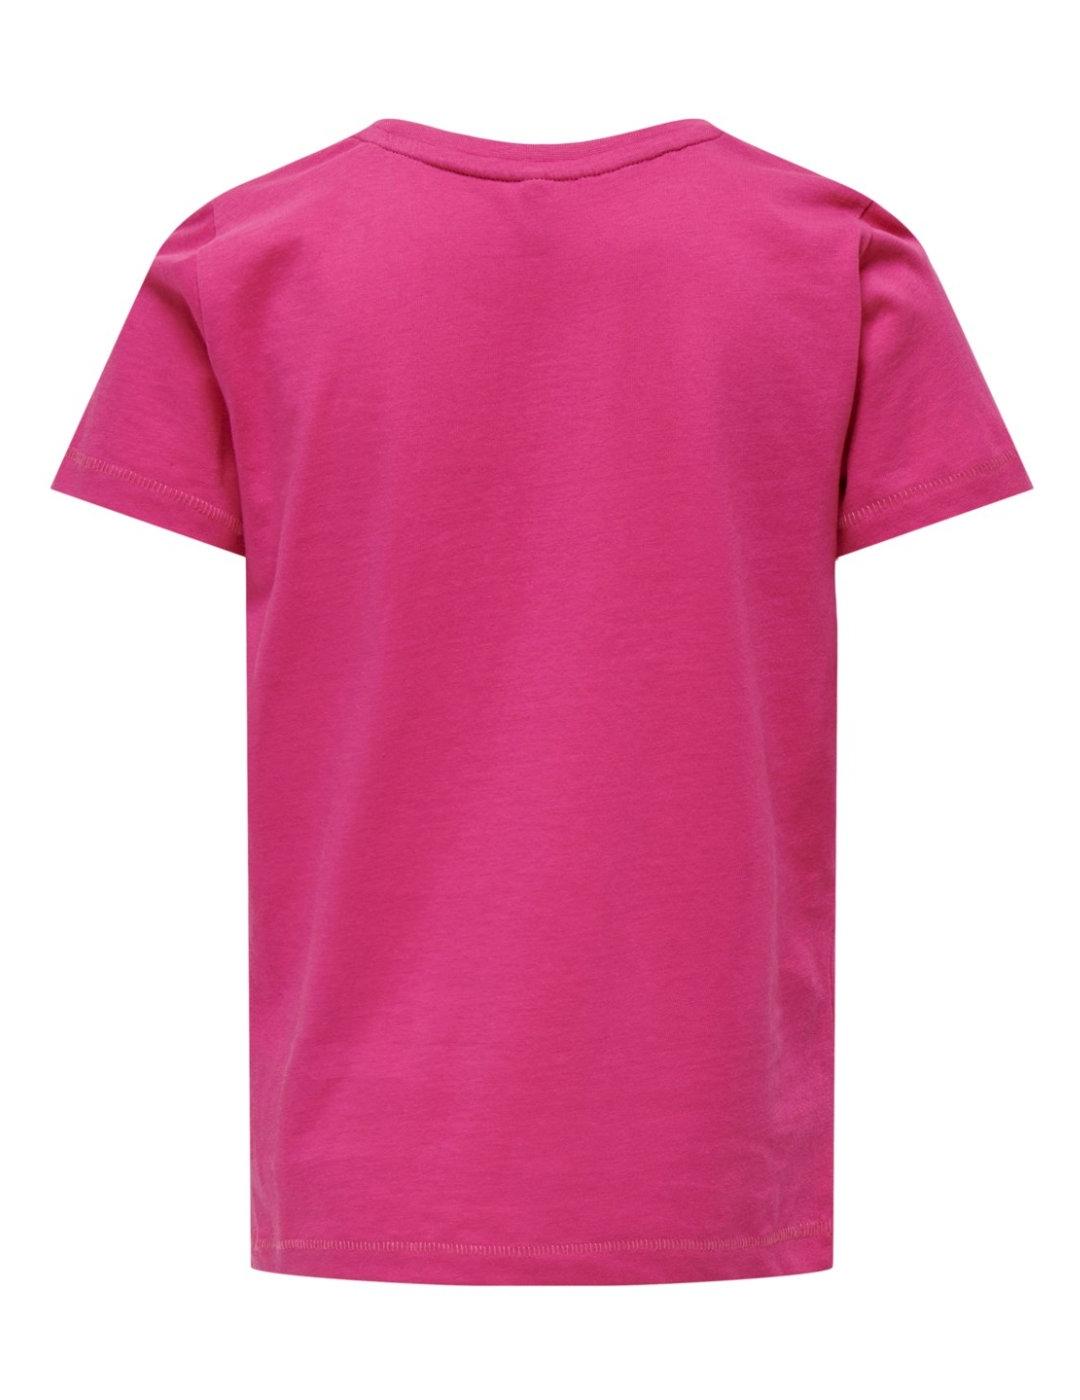 Camiseta Only Kids Wera rosa manga corta para niña